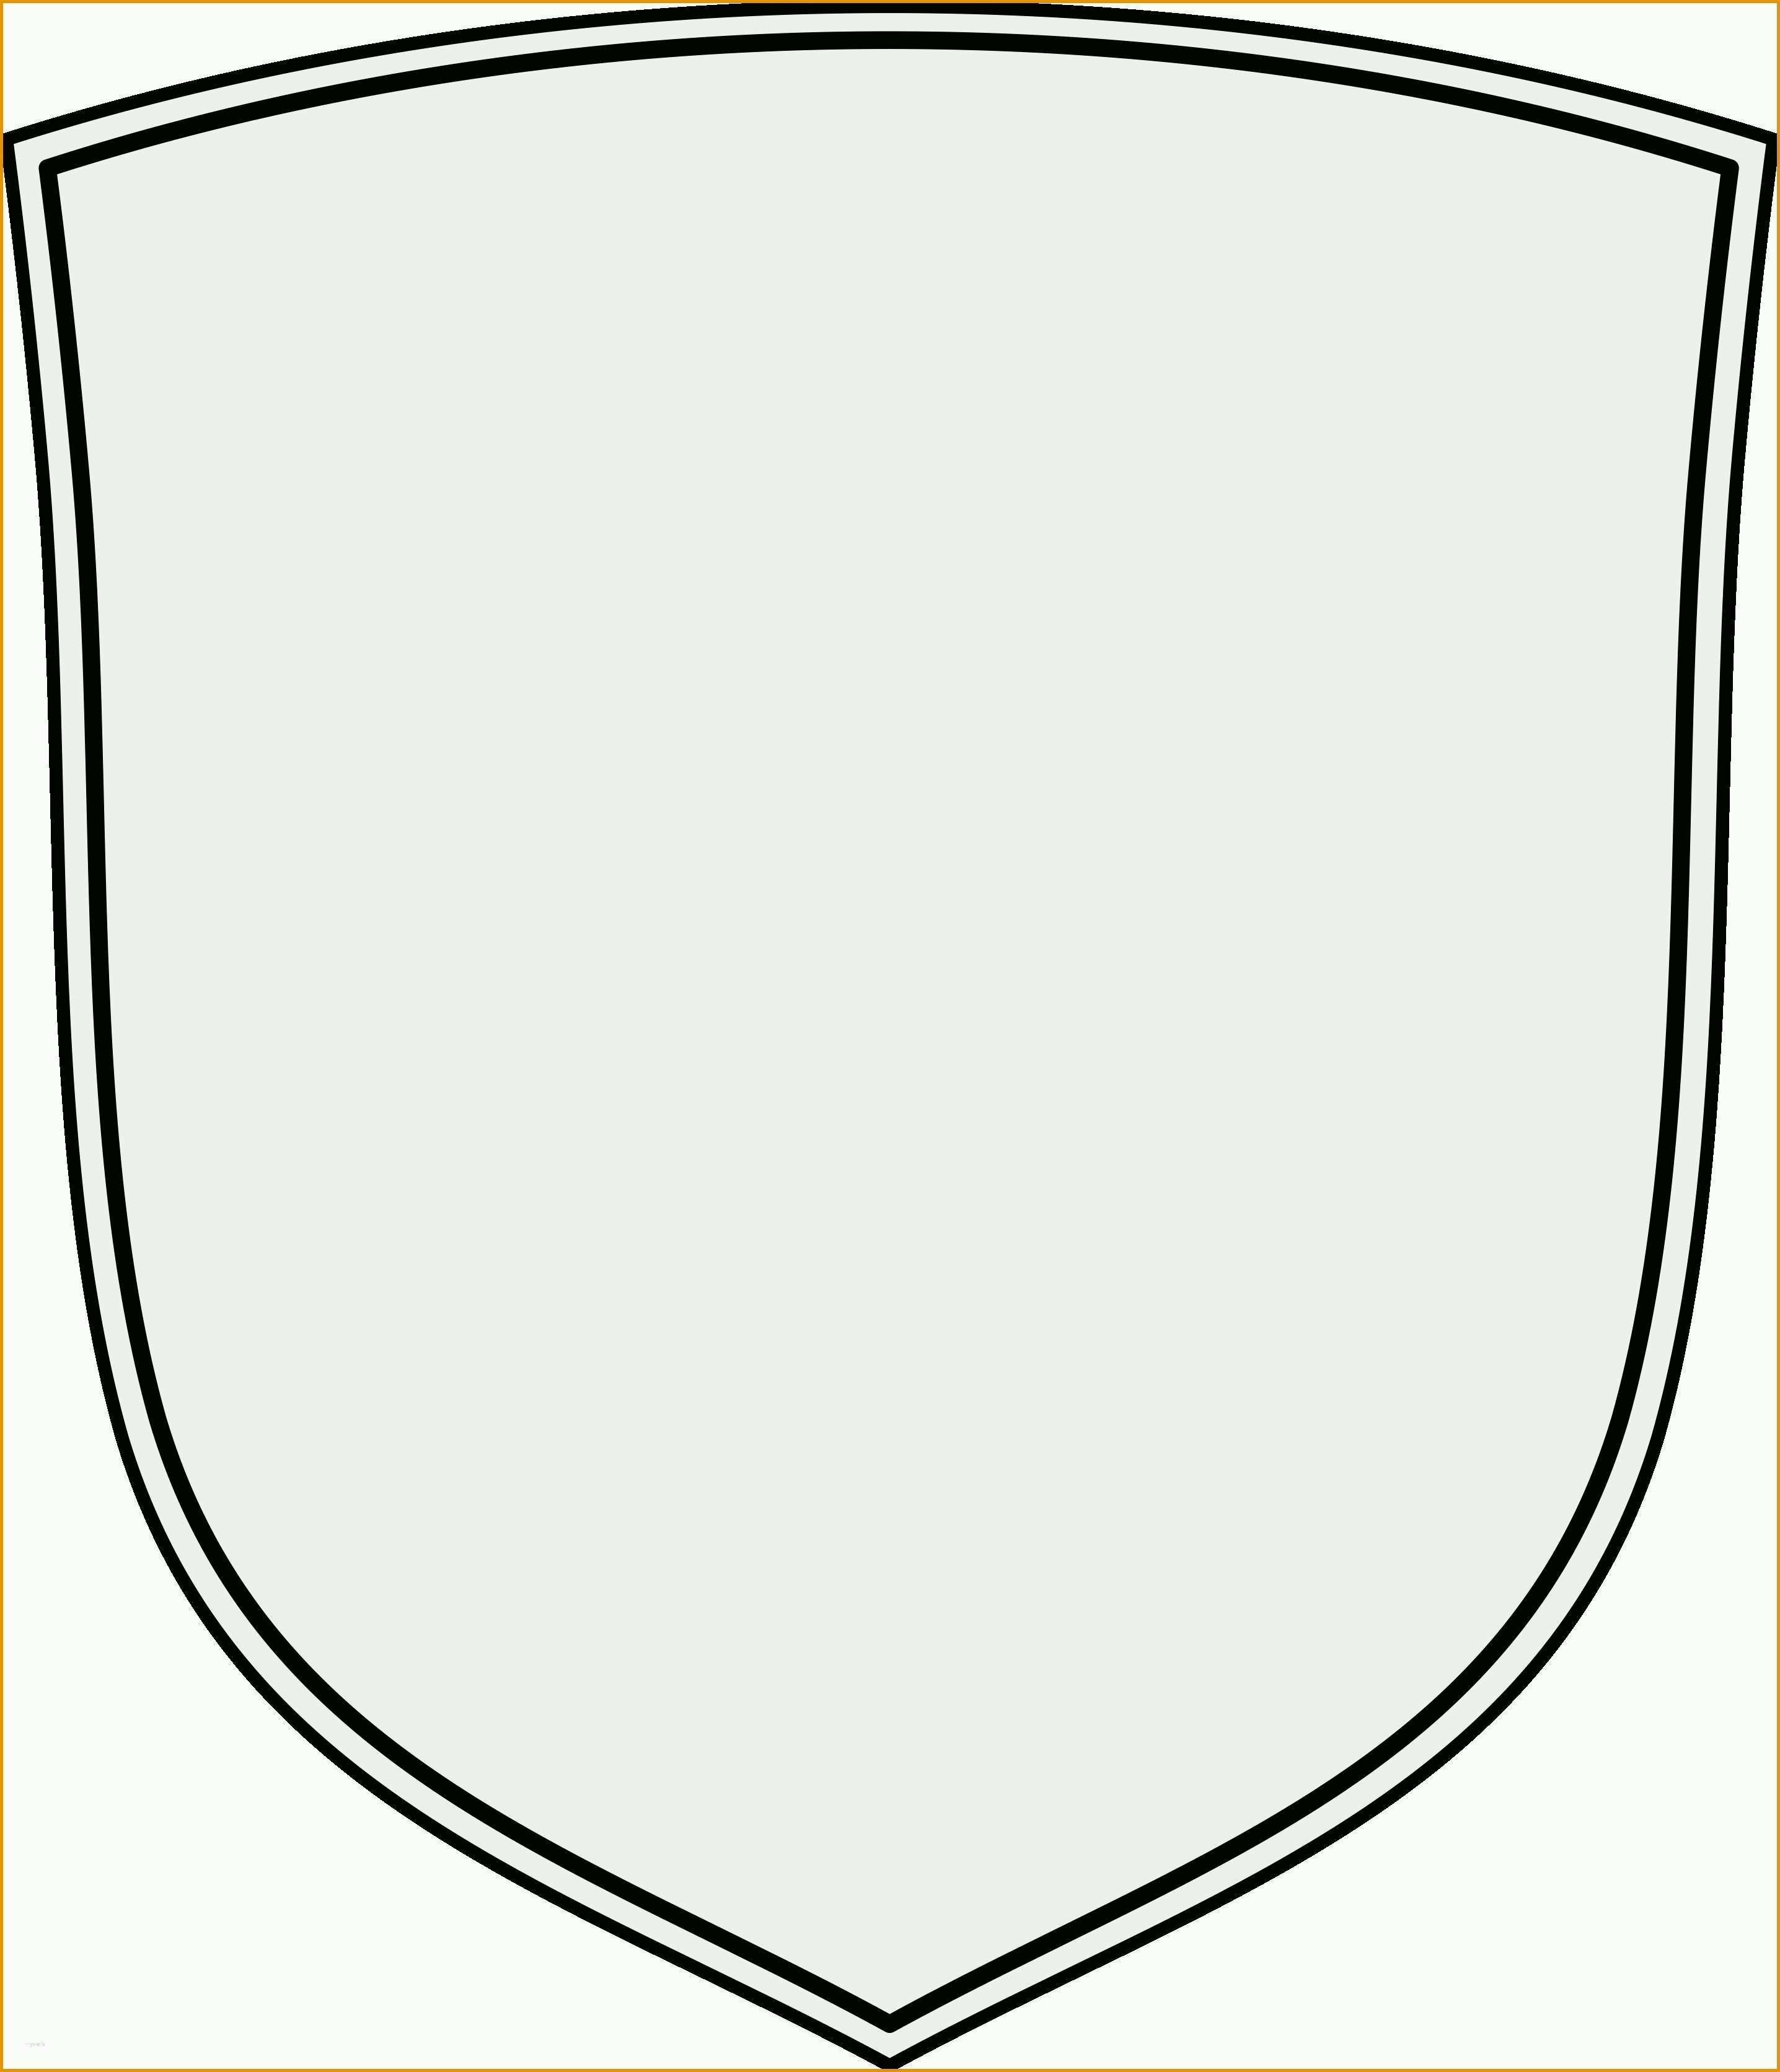 Ausgezeichnet Wappen Vorlage Kostenlos Wunderbar Familienwappen